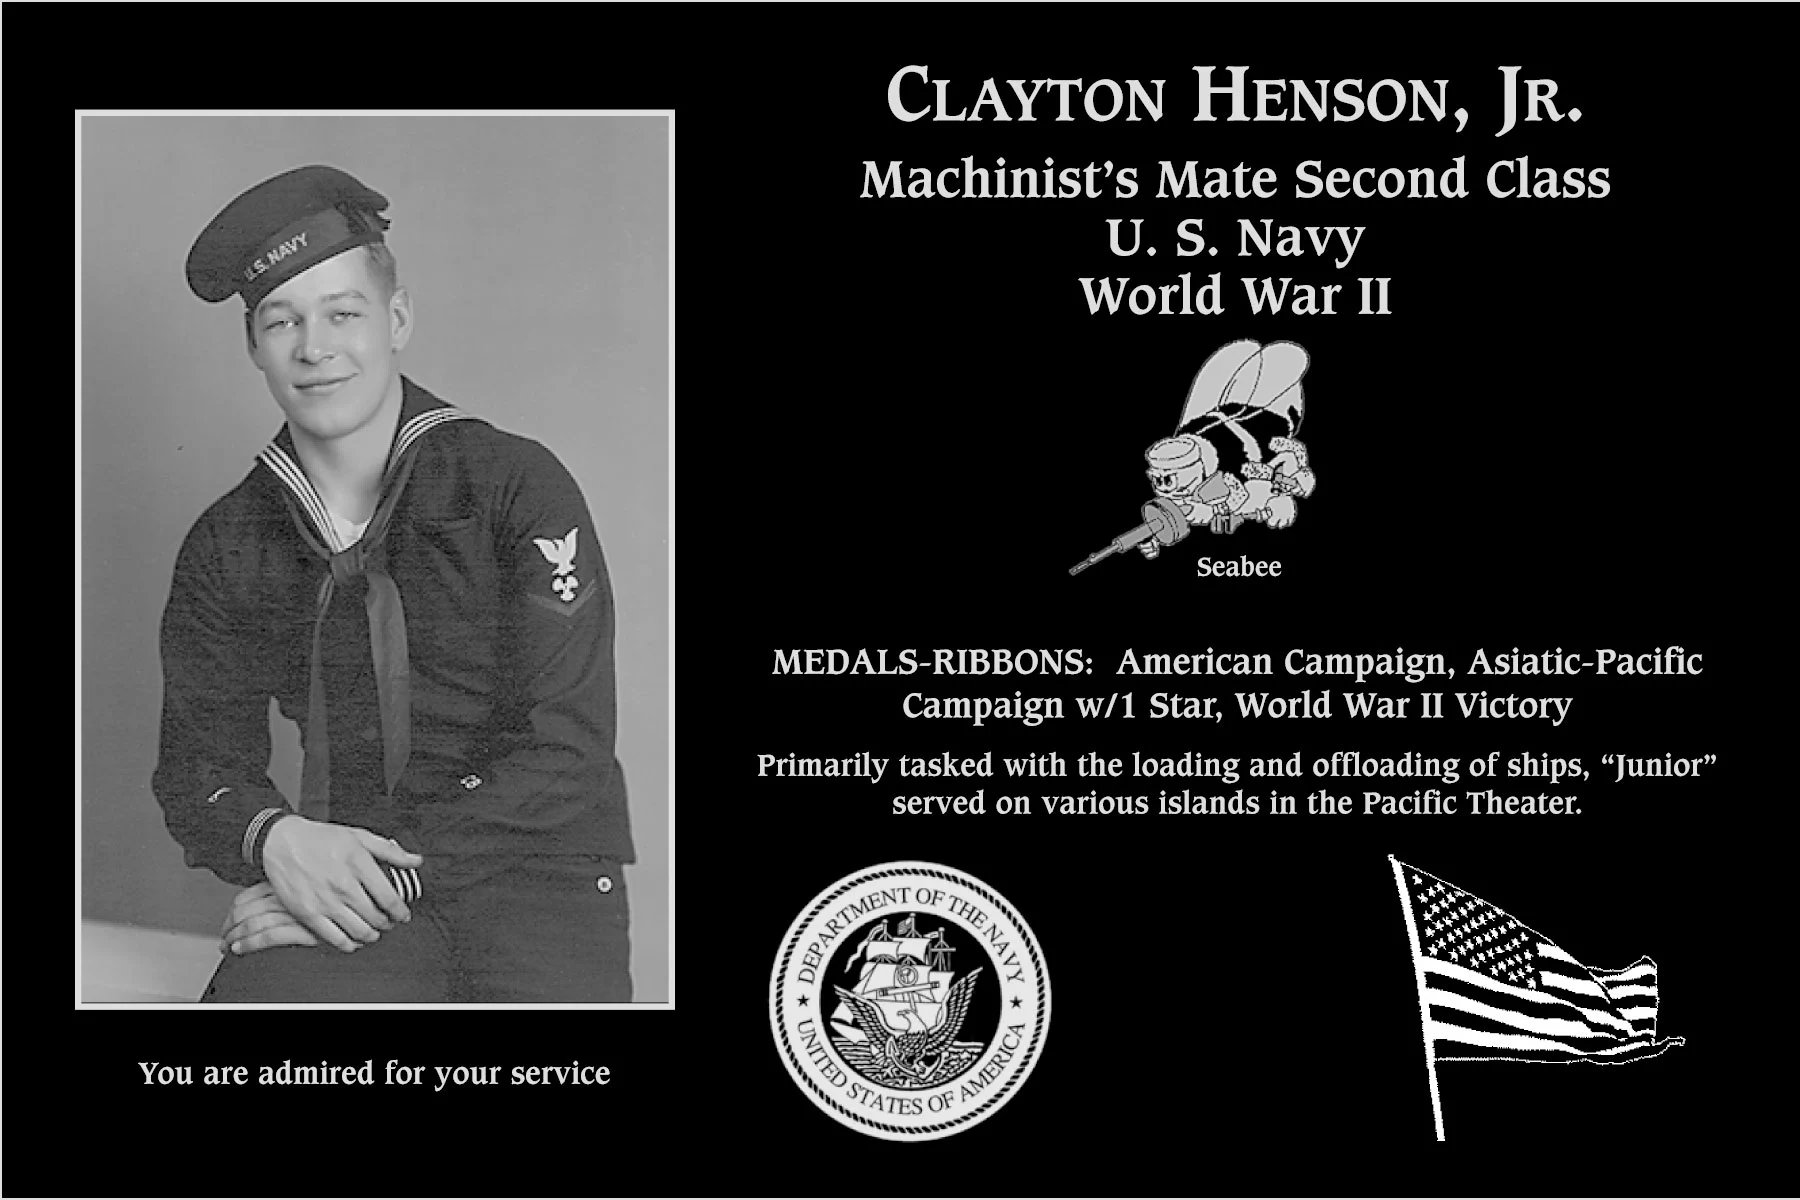 Clayton “Junior” Henson, jr